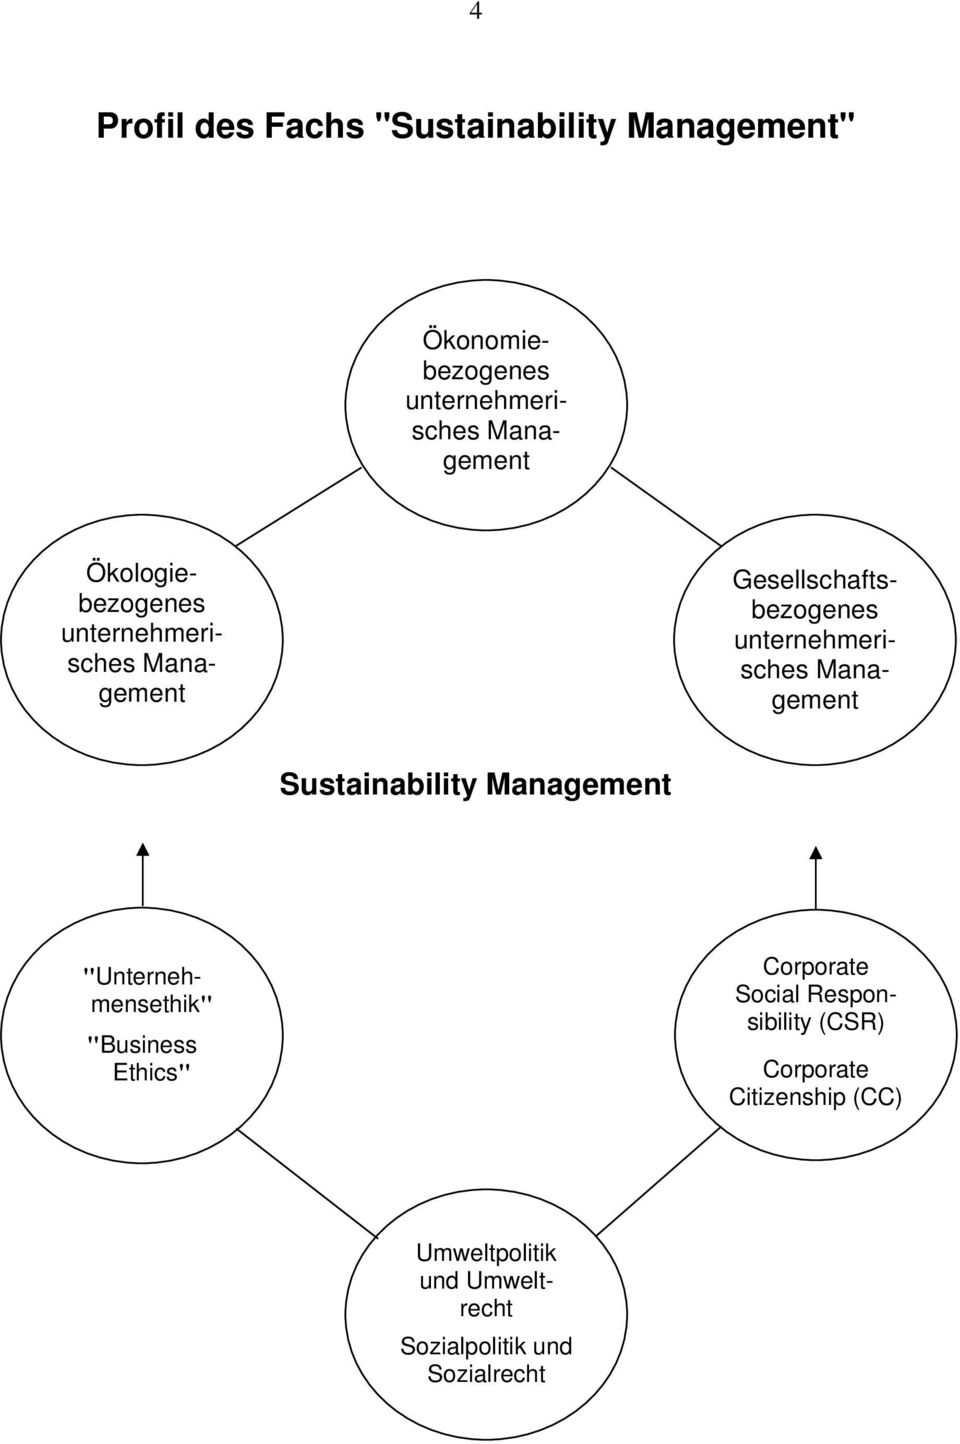 Sozialrecht Gesellschaftsbezogenes unternehmerisches Management Sustainability Management